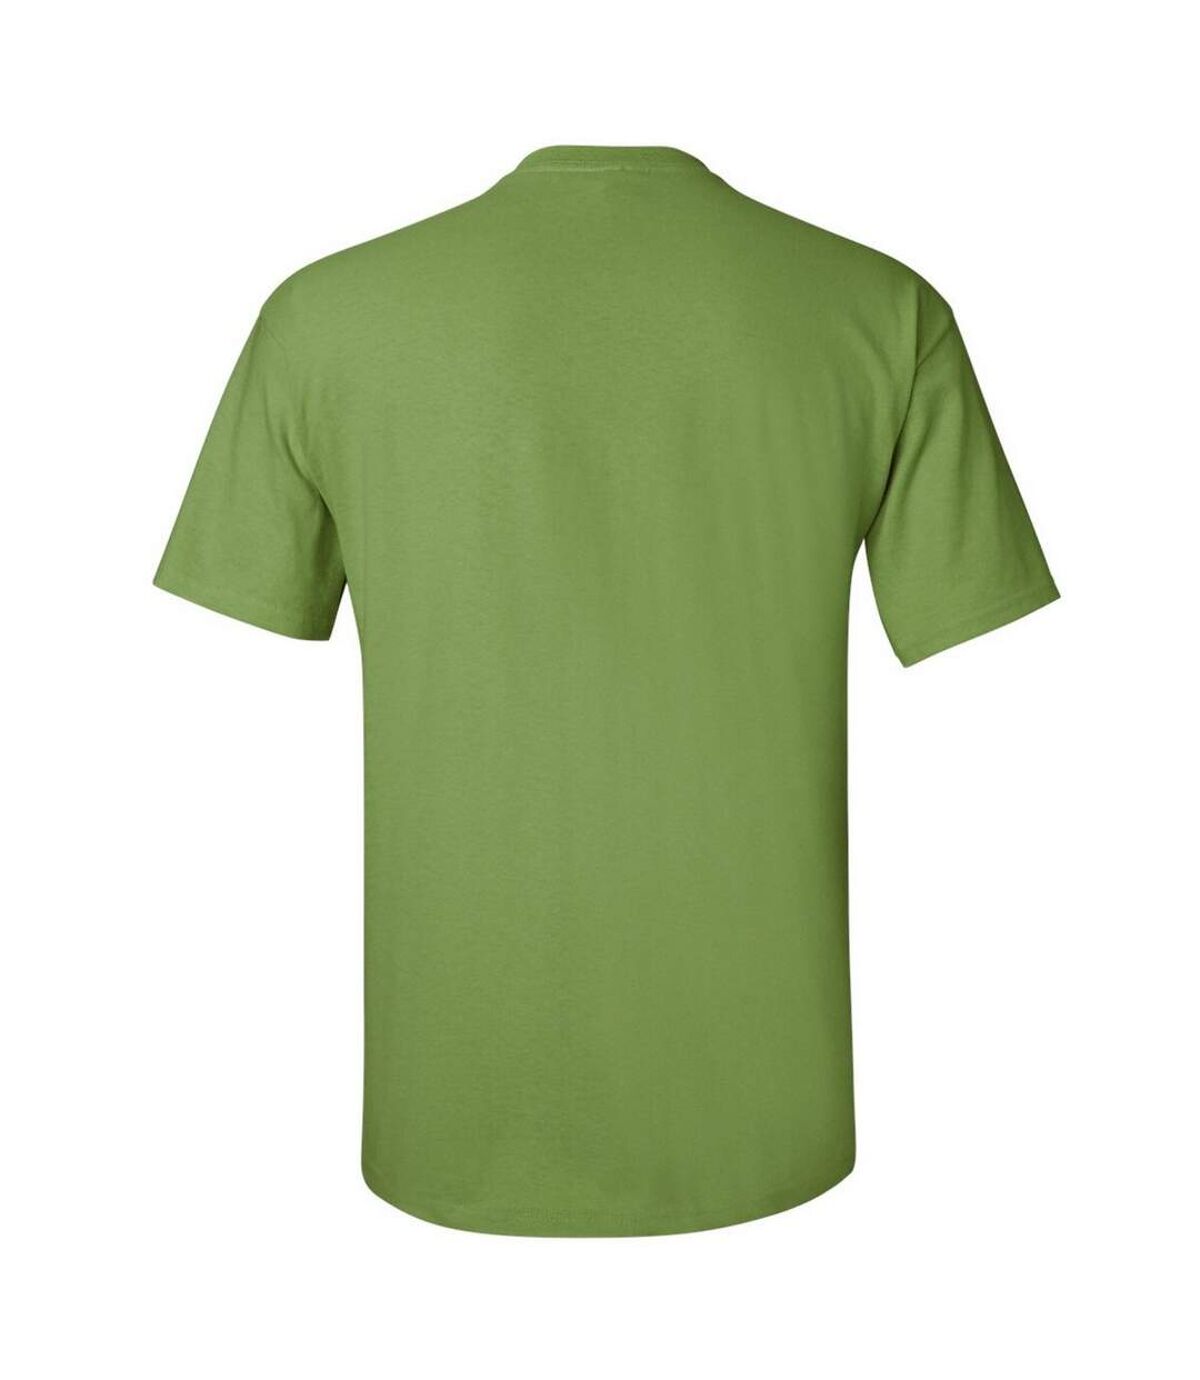 Gildan - T-shirt à manches courtes - Homme (Kiwi) - UTBC475